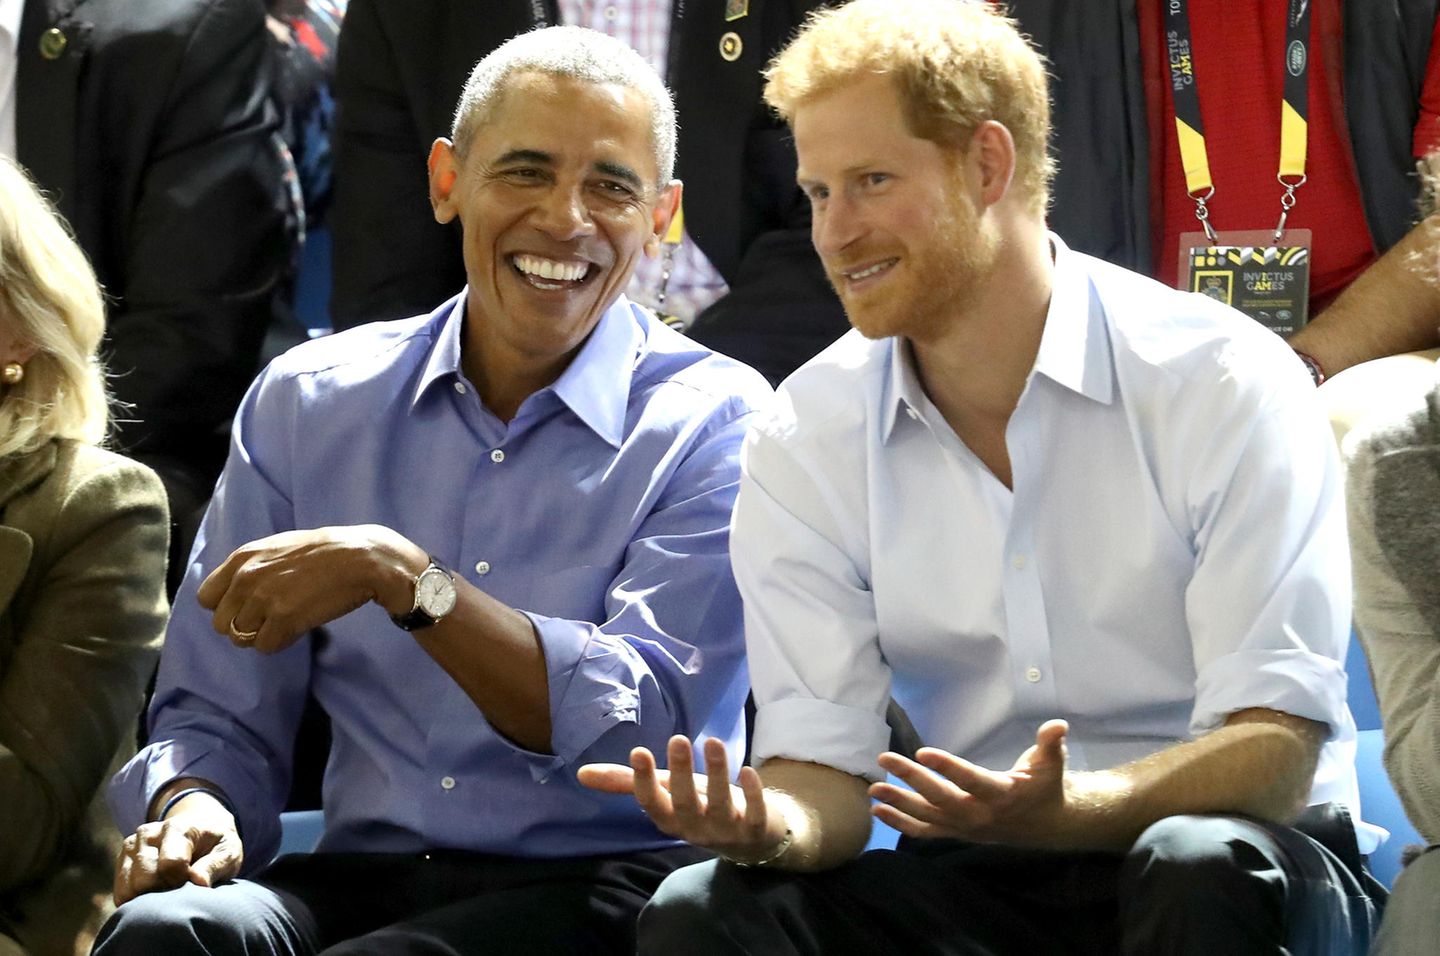 Darum darf Prinz Harry die Obamas nicht zu seiner Hochzeit einladen